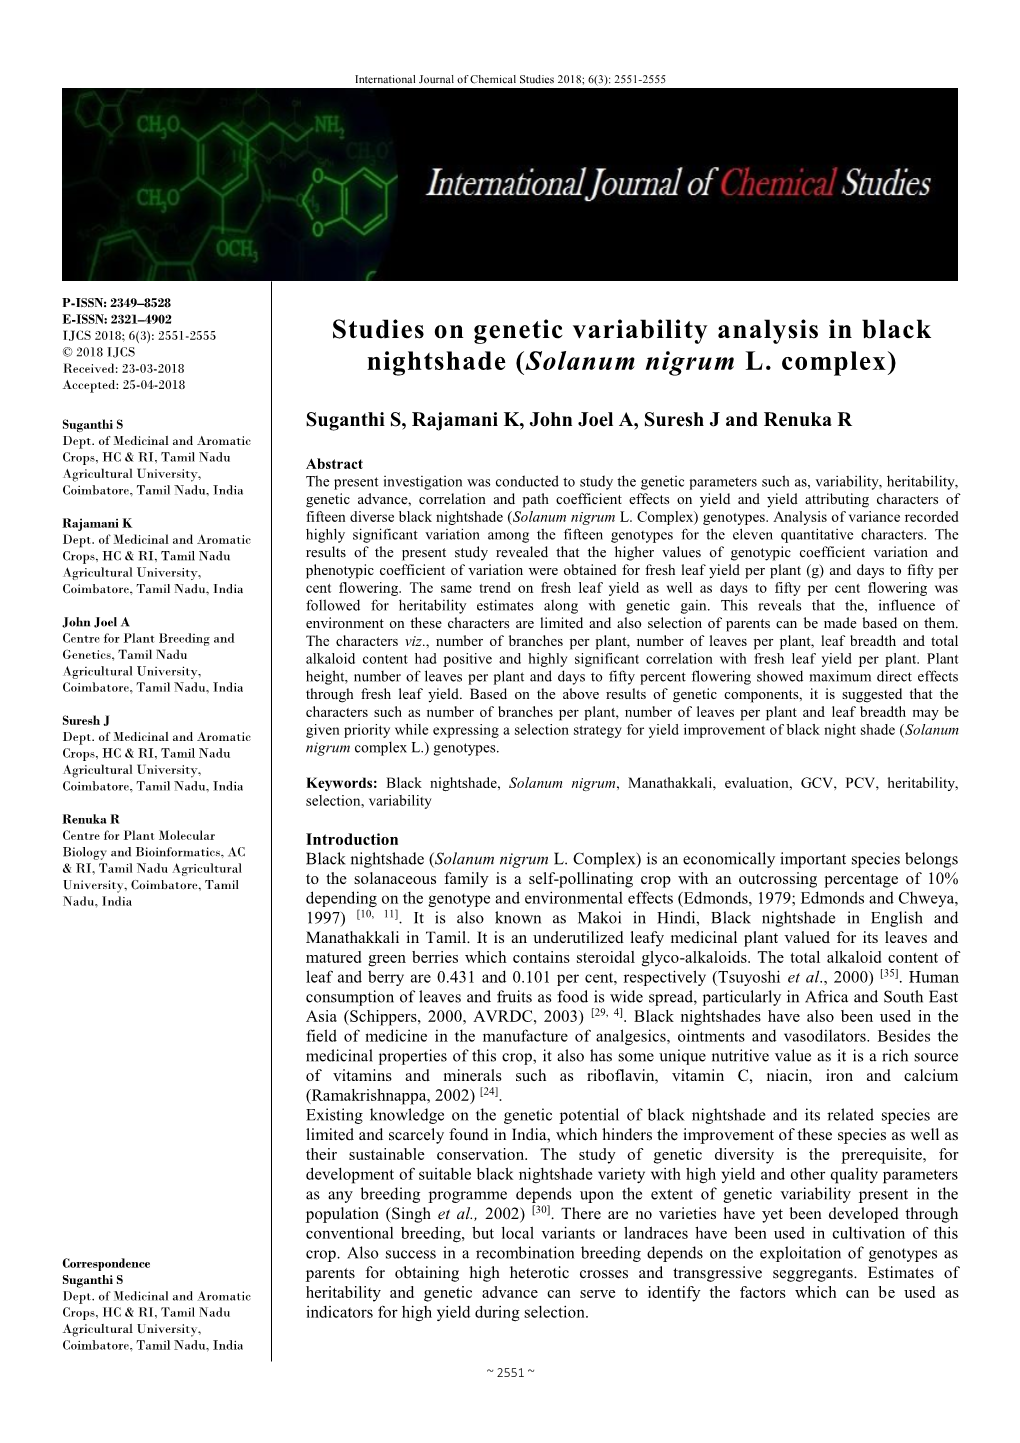 Studies on Genetic Variability Analysis in Black Nightshade (Solanum